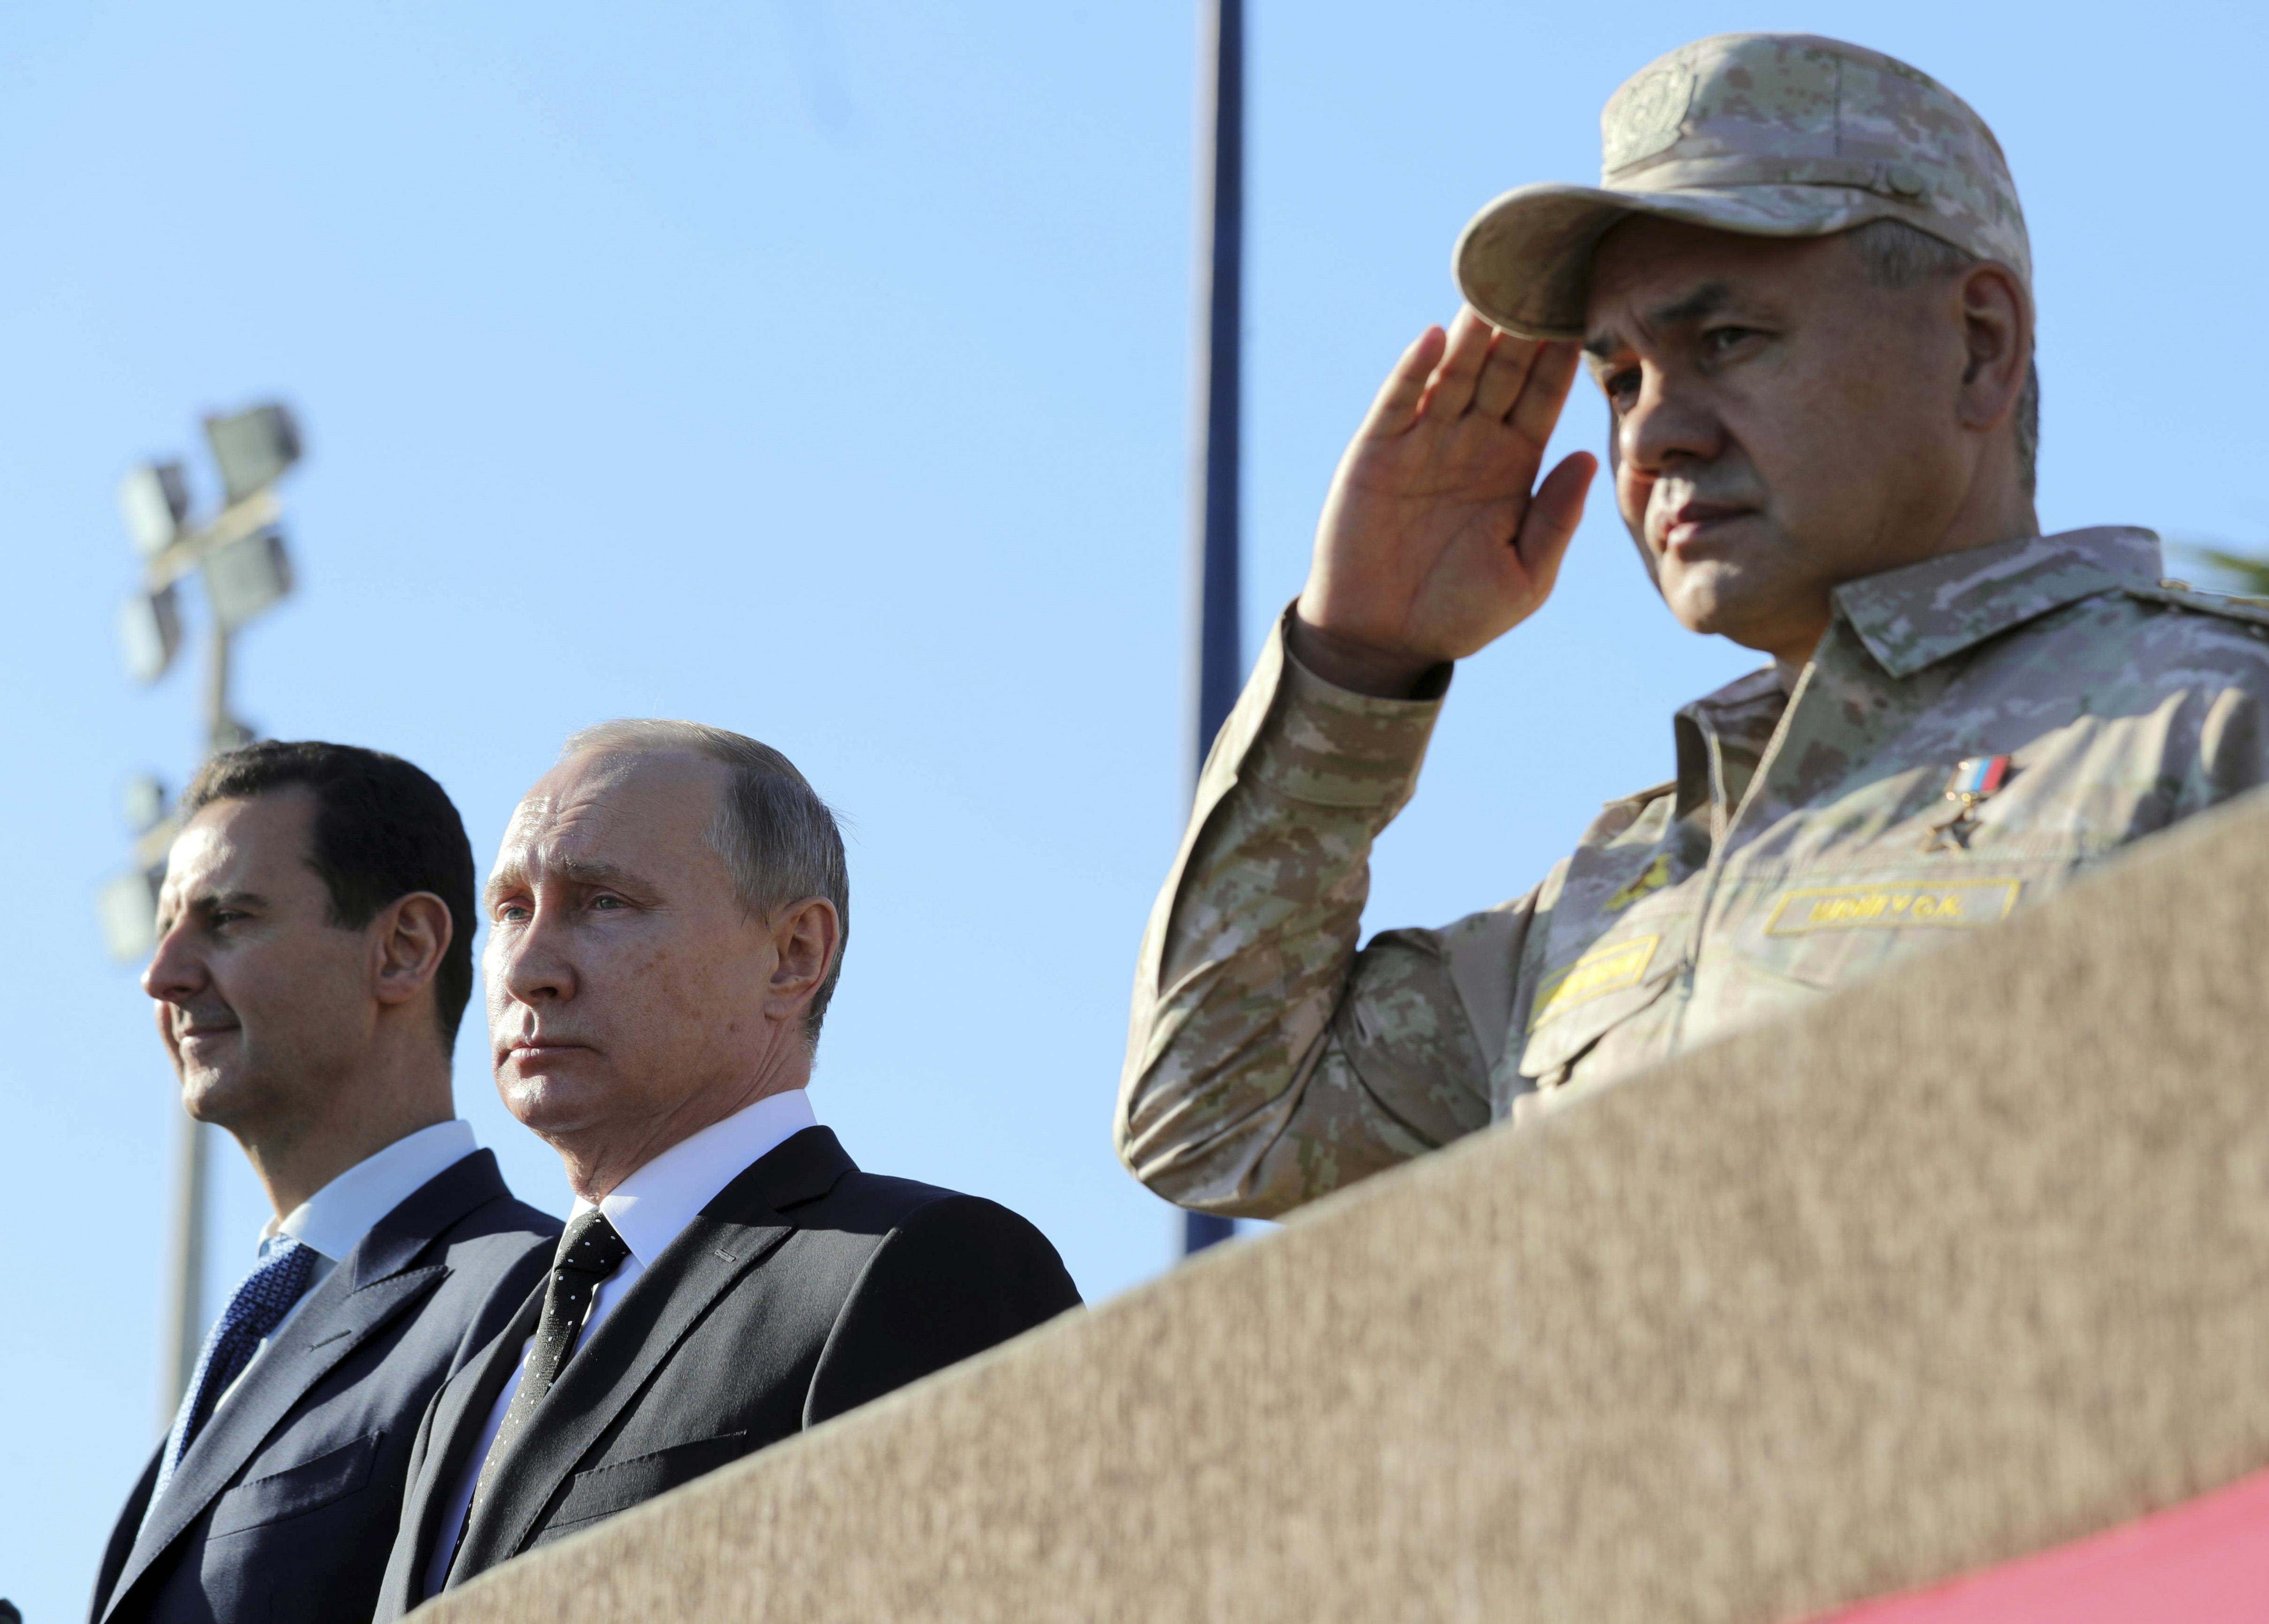 Ο Πούτιν ανακοίνωσε την απόσυρση στρατιωτικών δυνάμεων από Συρία